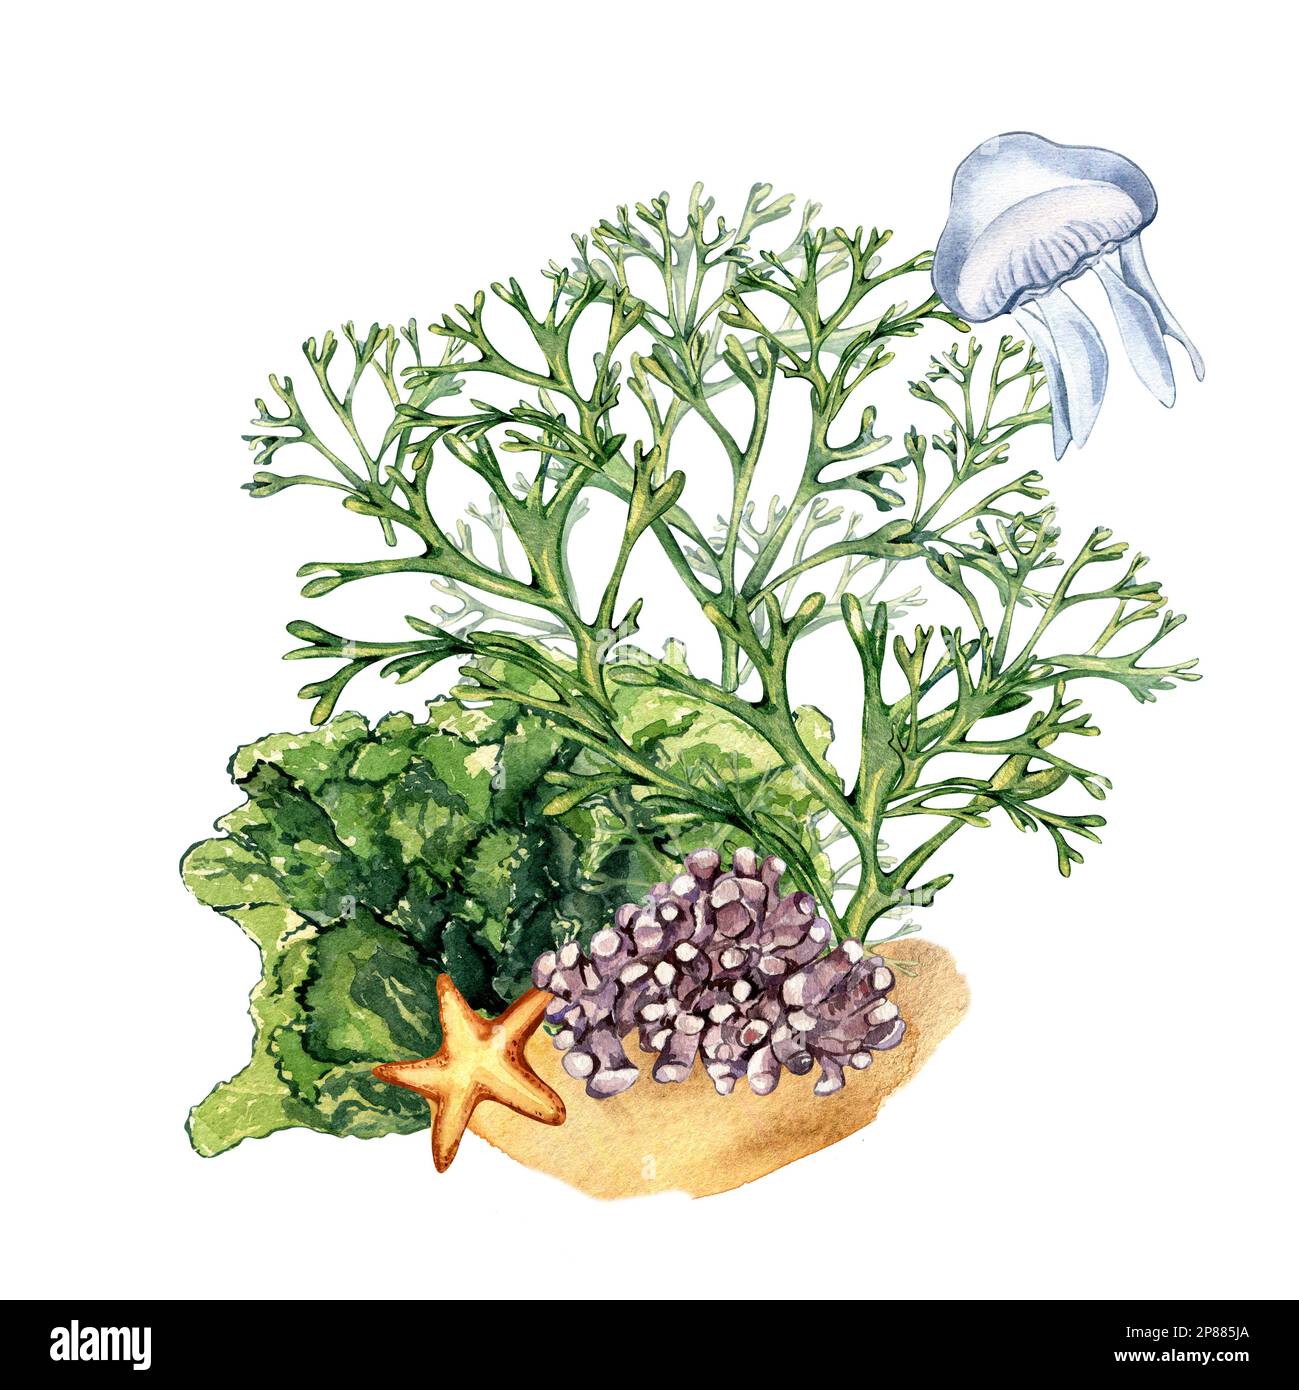 Composizione di piante di mare verde acquerello illustrazione isolata su bianco. Codium, meduse, corallo viola, ulva disegnato a mano. Elemento di design per packag Foto Stock